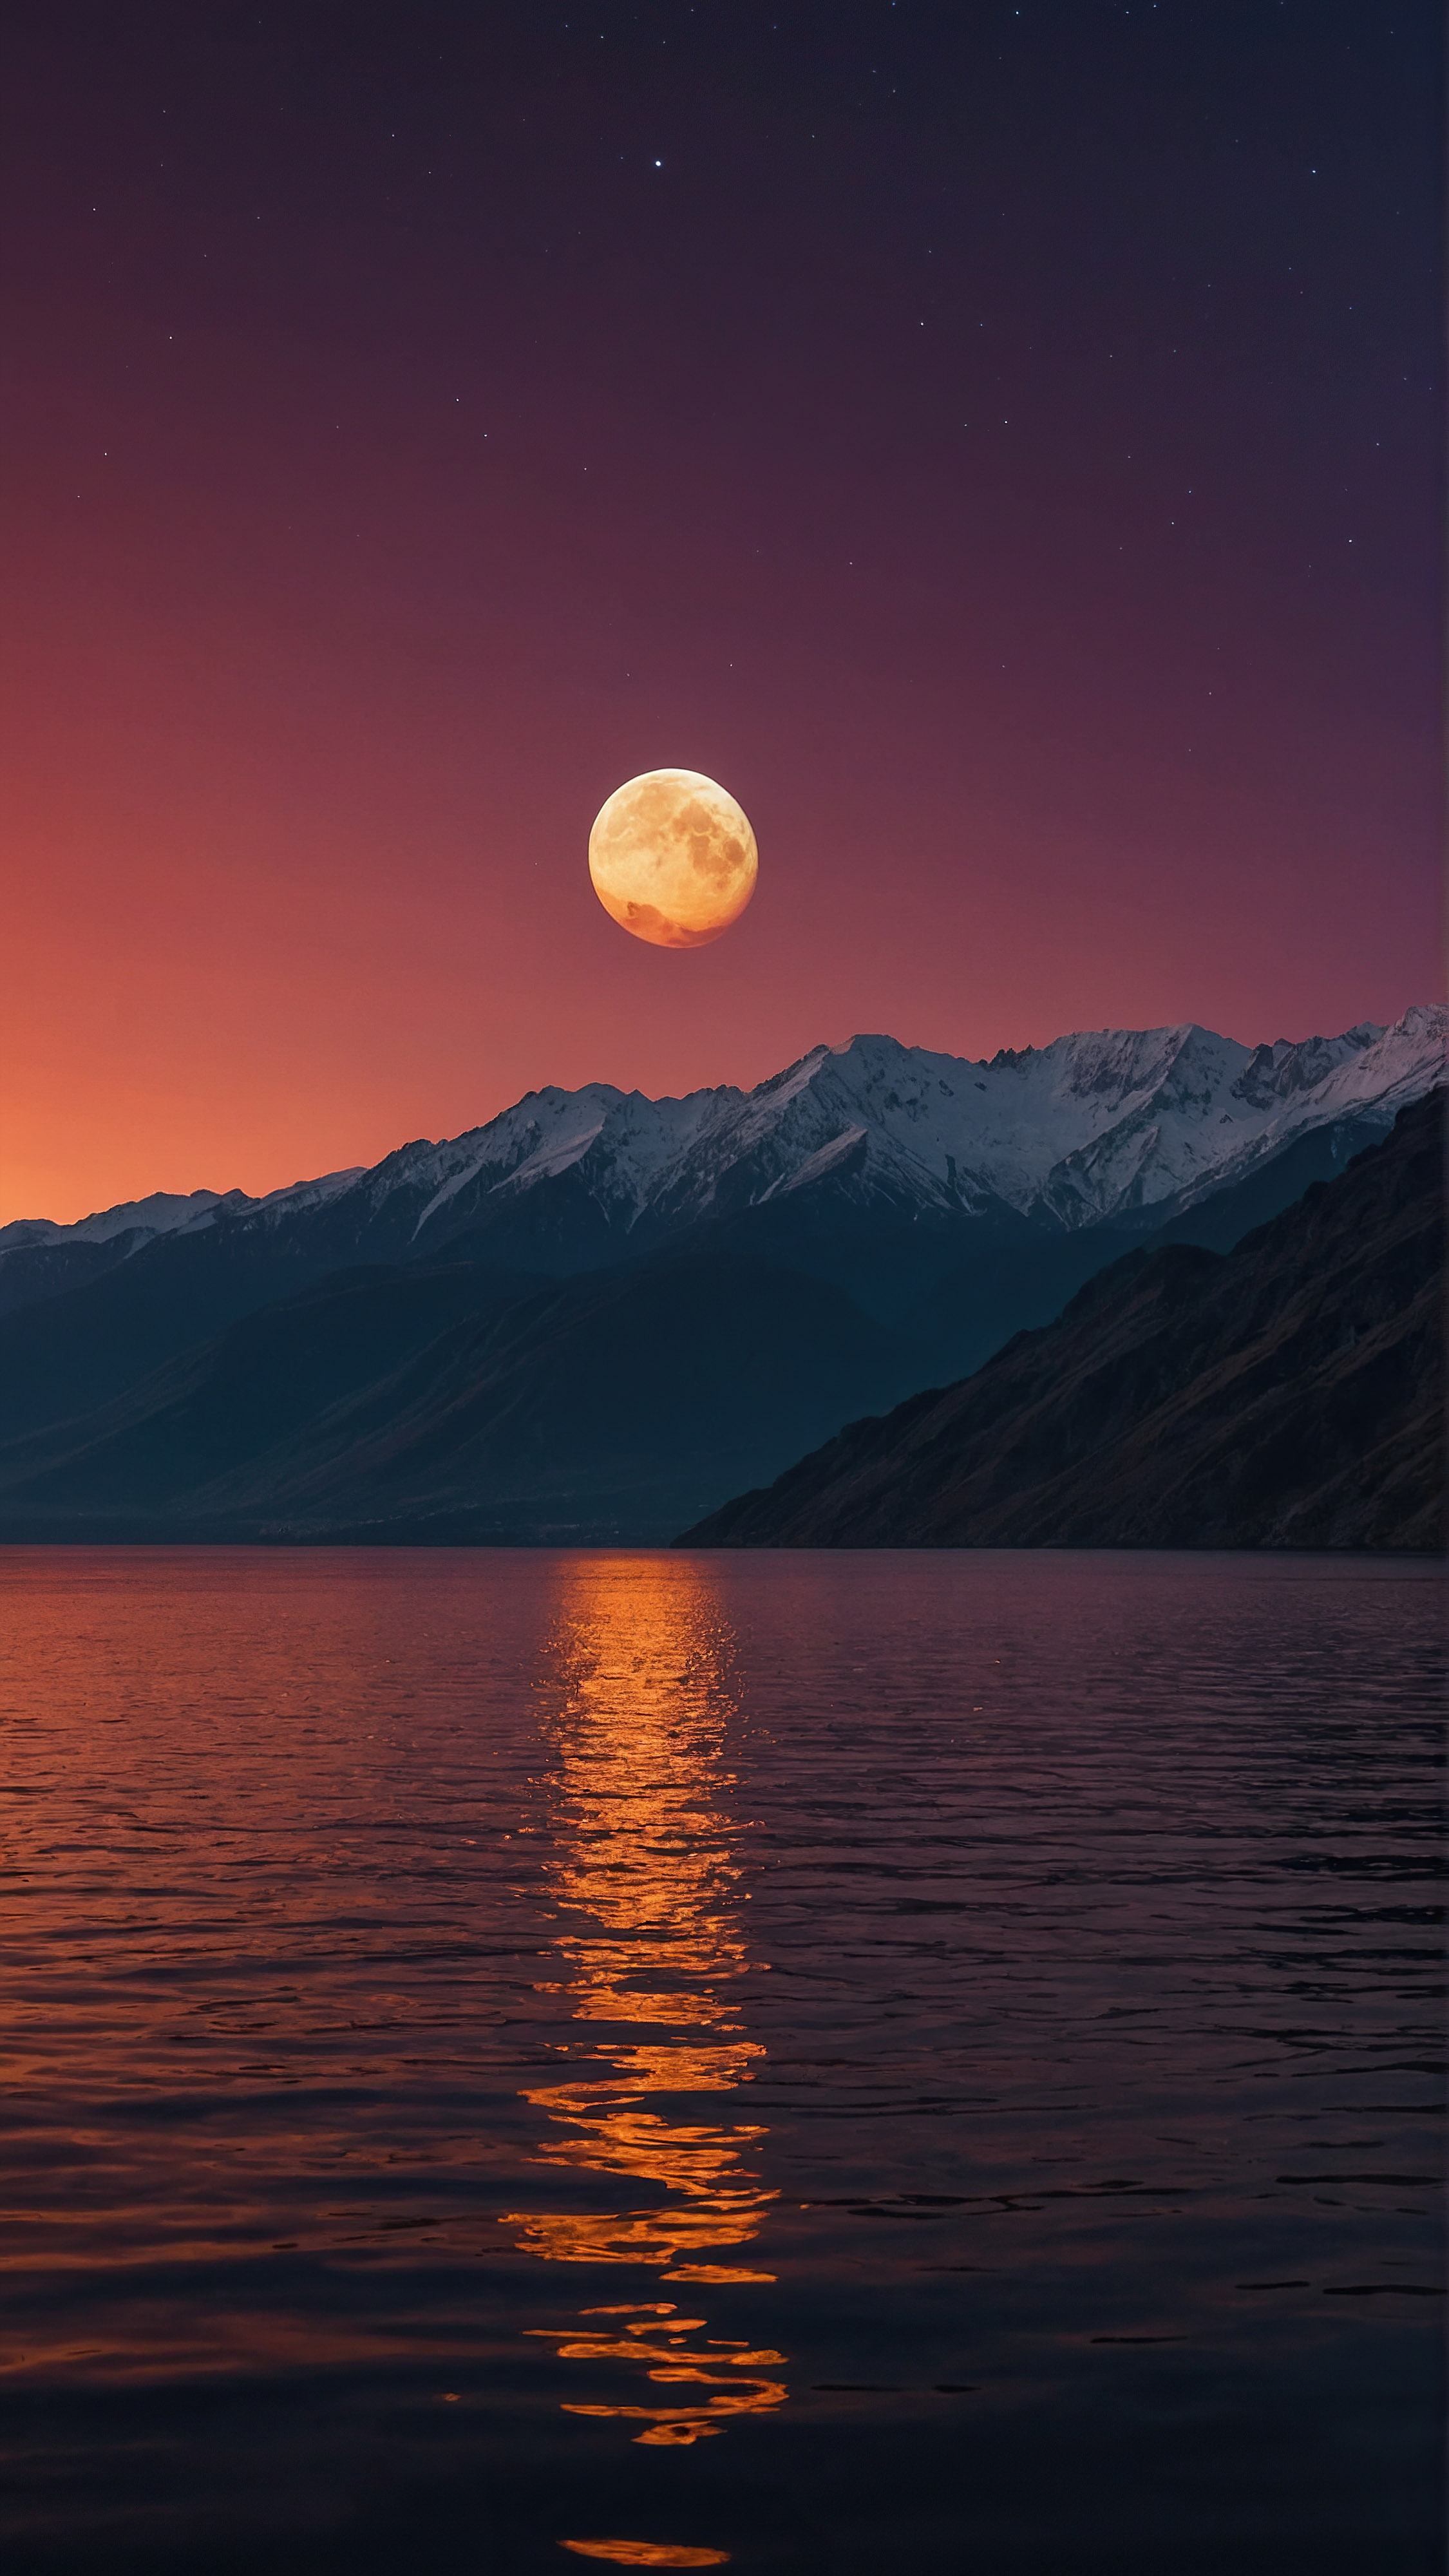 Découvrez la sérénité de notre fond d'écran nature iPhone 4K, dévoilant un paysage serein et surnaturel au crépuscule avec un ciel rempli de teintes vibrantes de rouge, orange et violet, une lune, et des montagnes en silhouette se reflétant sur une étendue d'eau calme en dessous.